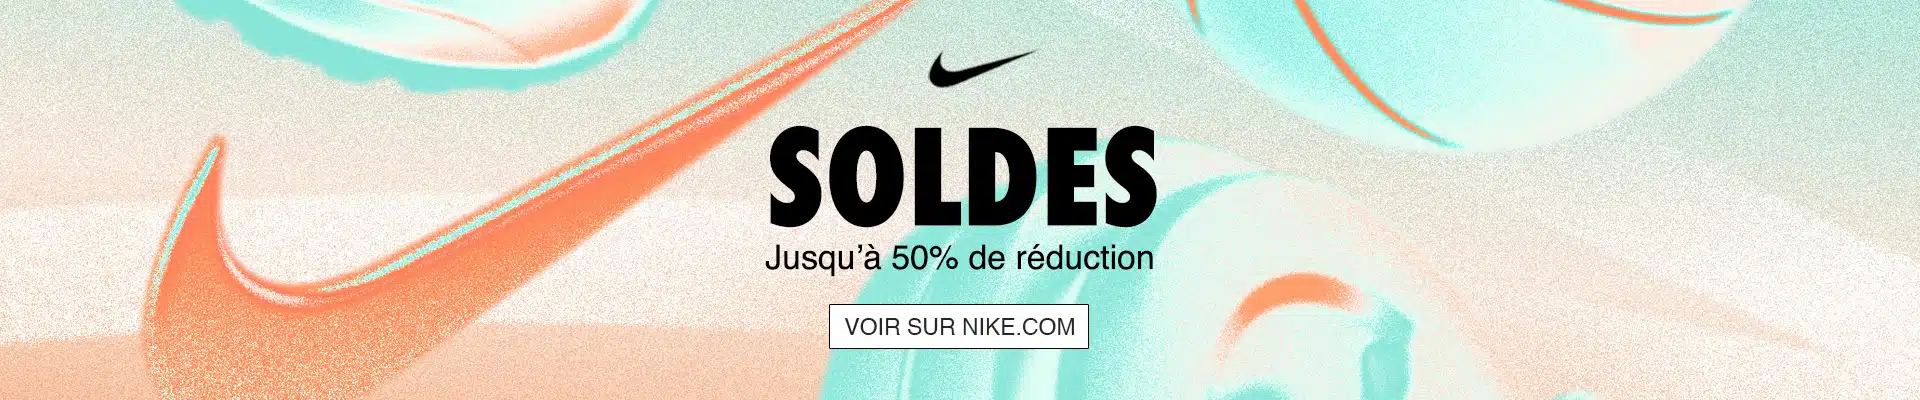 Soldes VNTG Nike